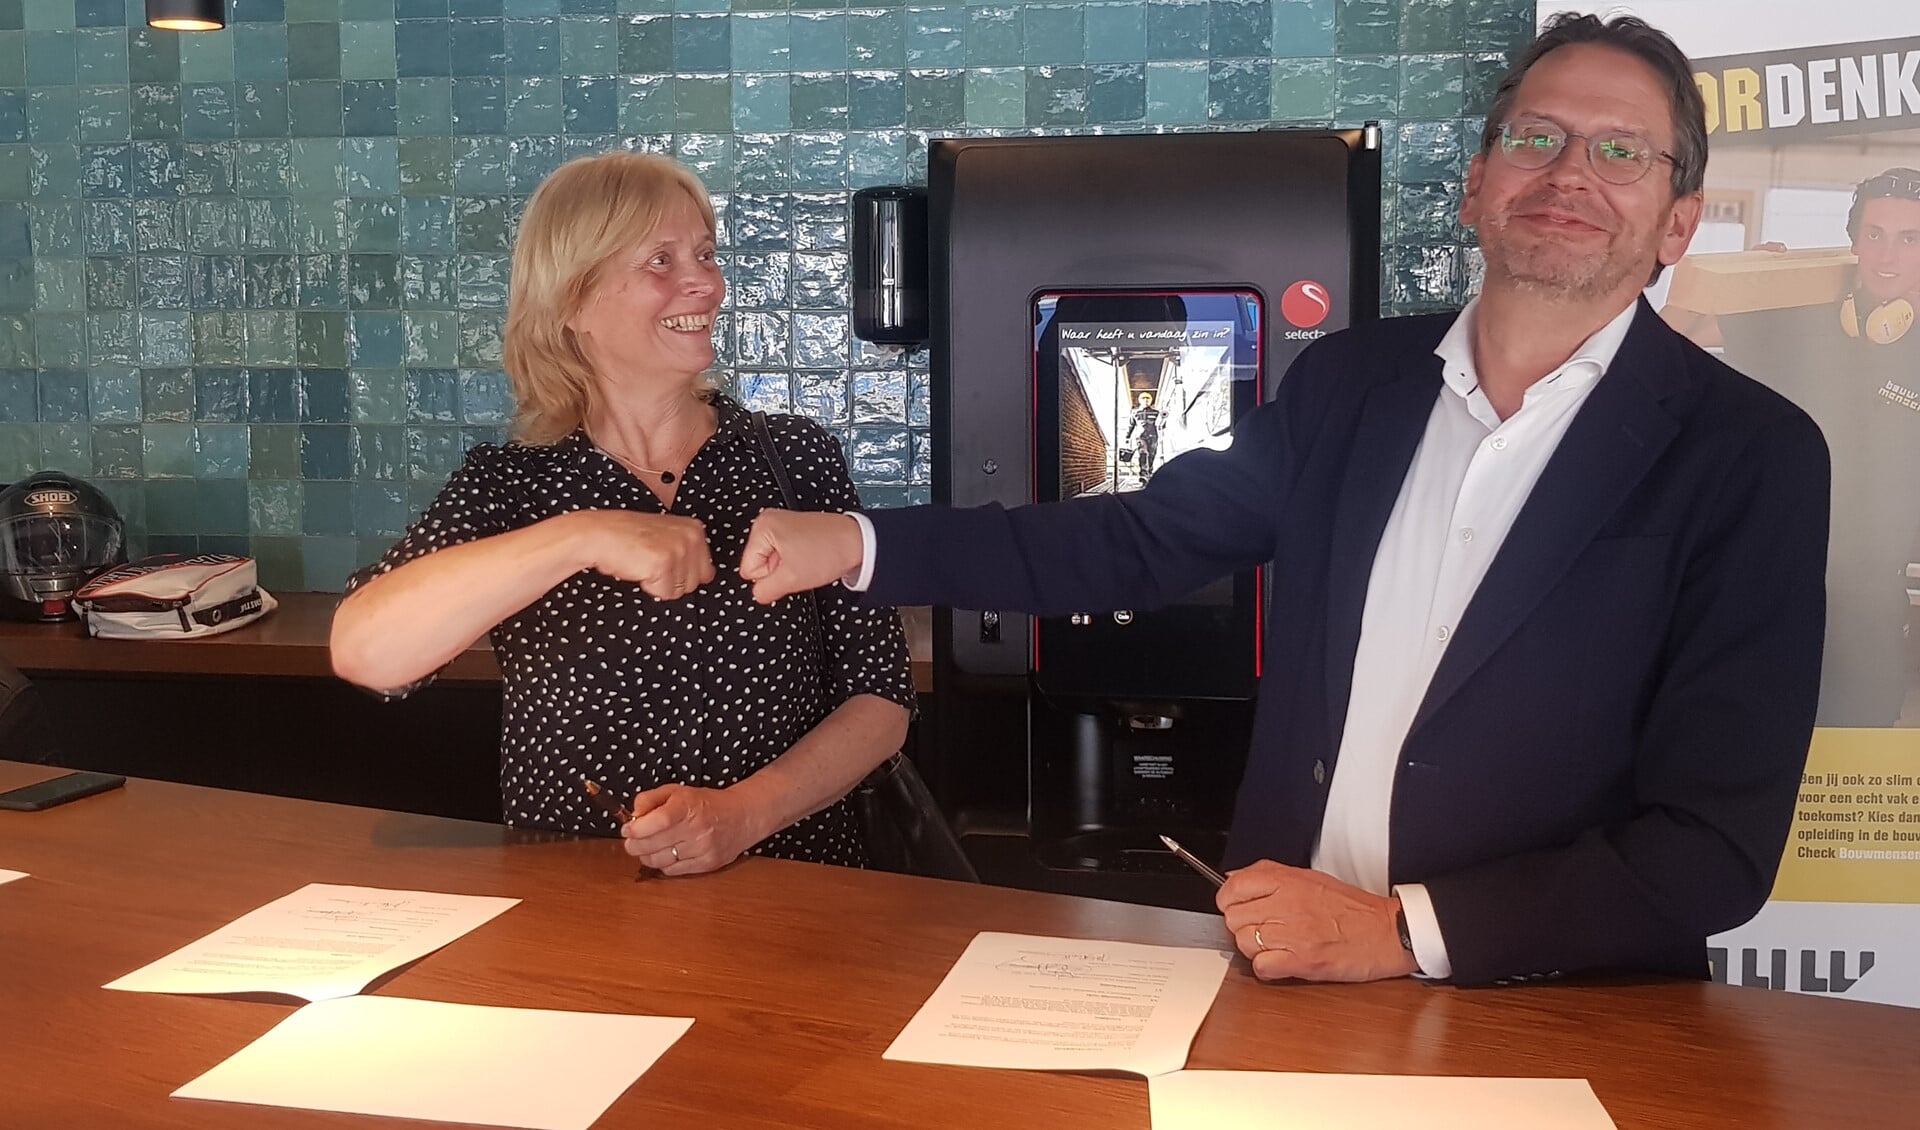 De ondertekening werd gedaan door Ronald Cobben van het Energiedienstenbedrijf en Annemarie Poorthuis van Energie Verbonden.